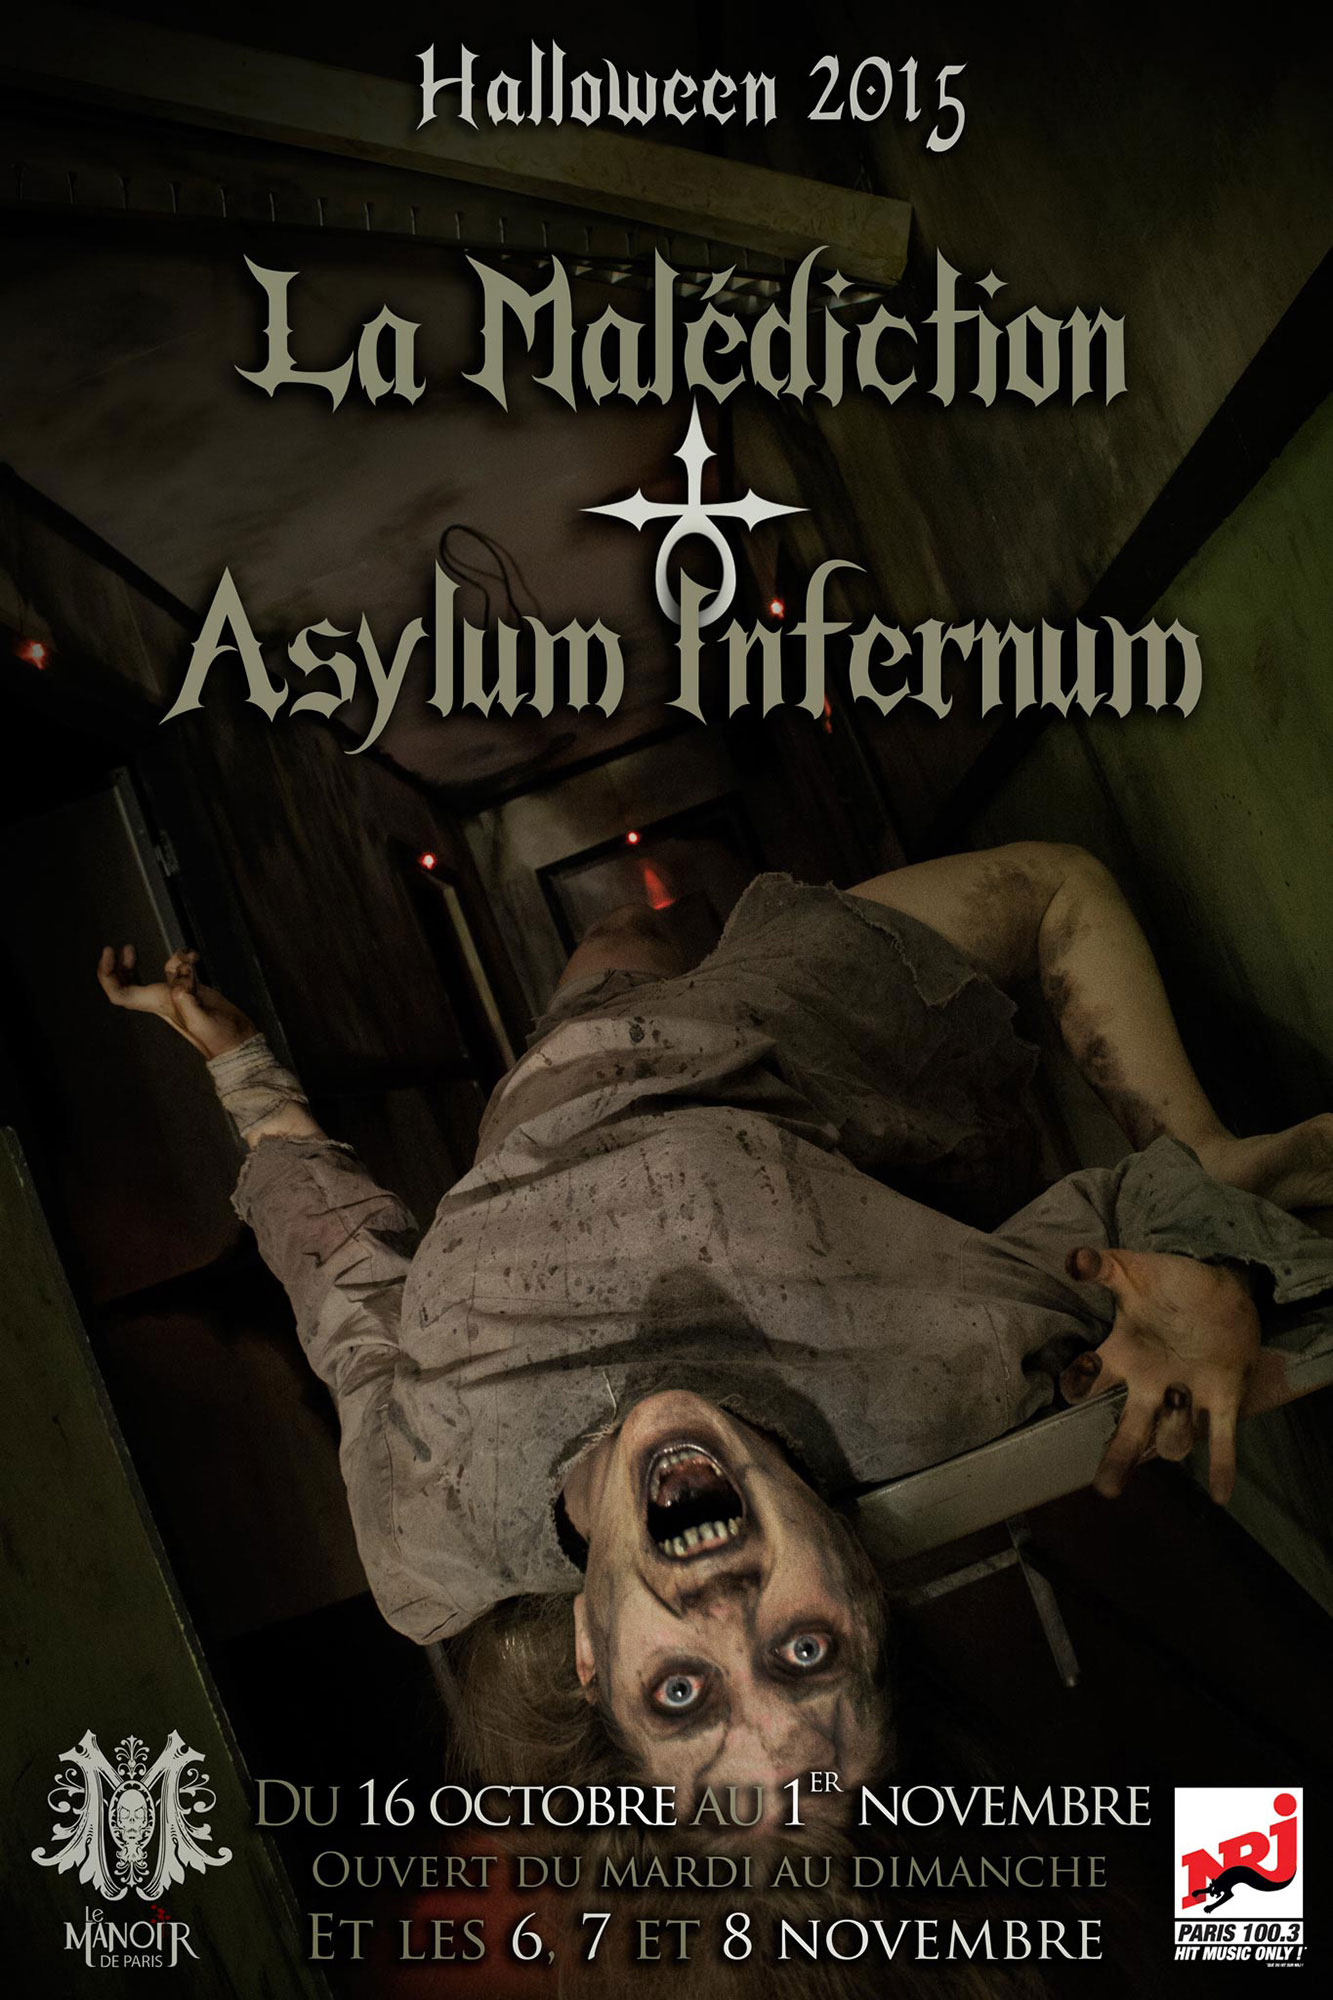 asylum_infernum_affiche_manoir_de_paris_anabelle_graphiste_freelance